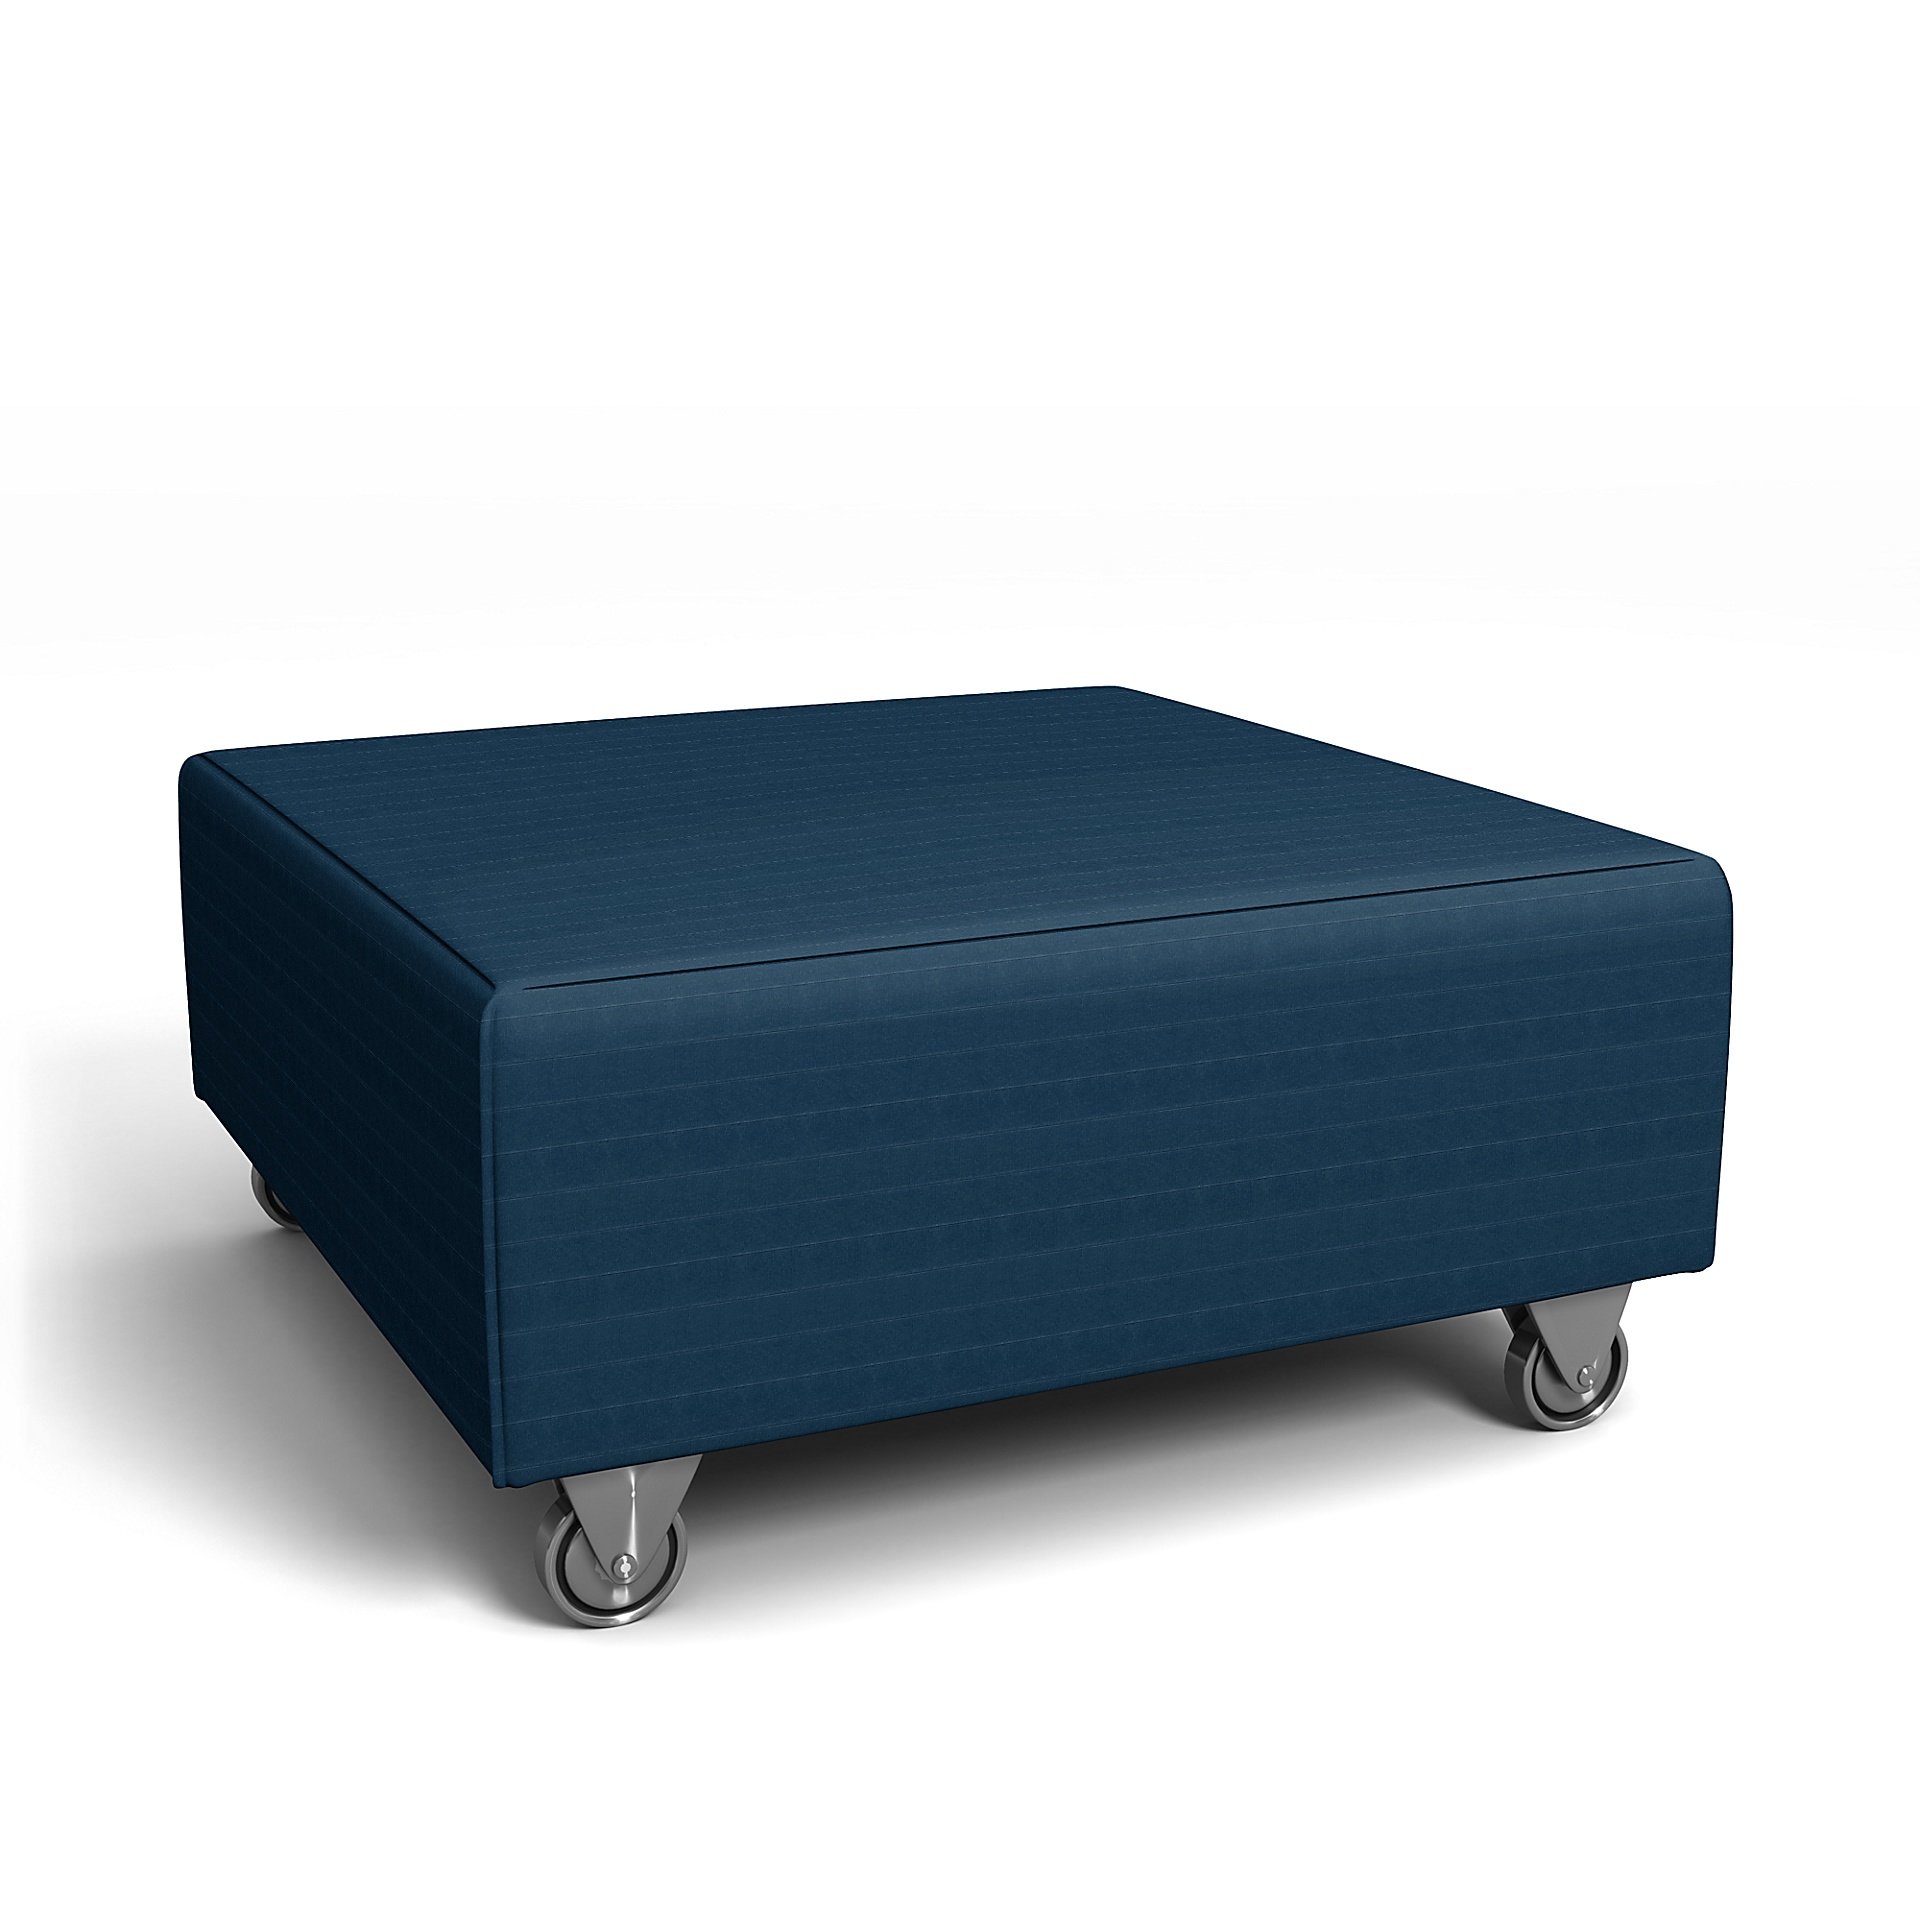 IKEA - Falsterbo Footstool Cover, Denim Blue, Velvet - Bemz